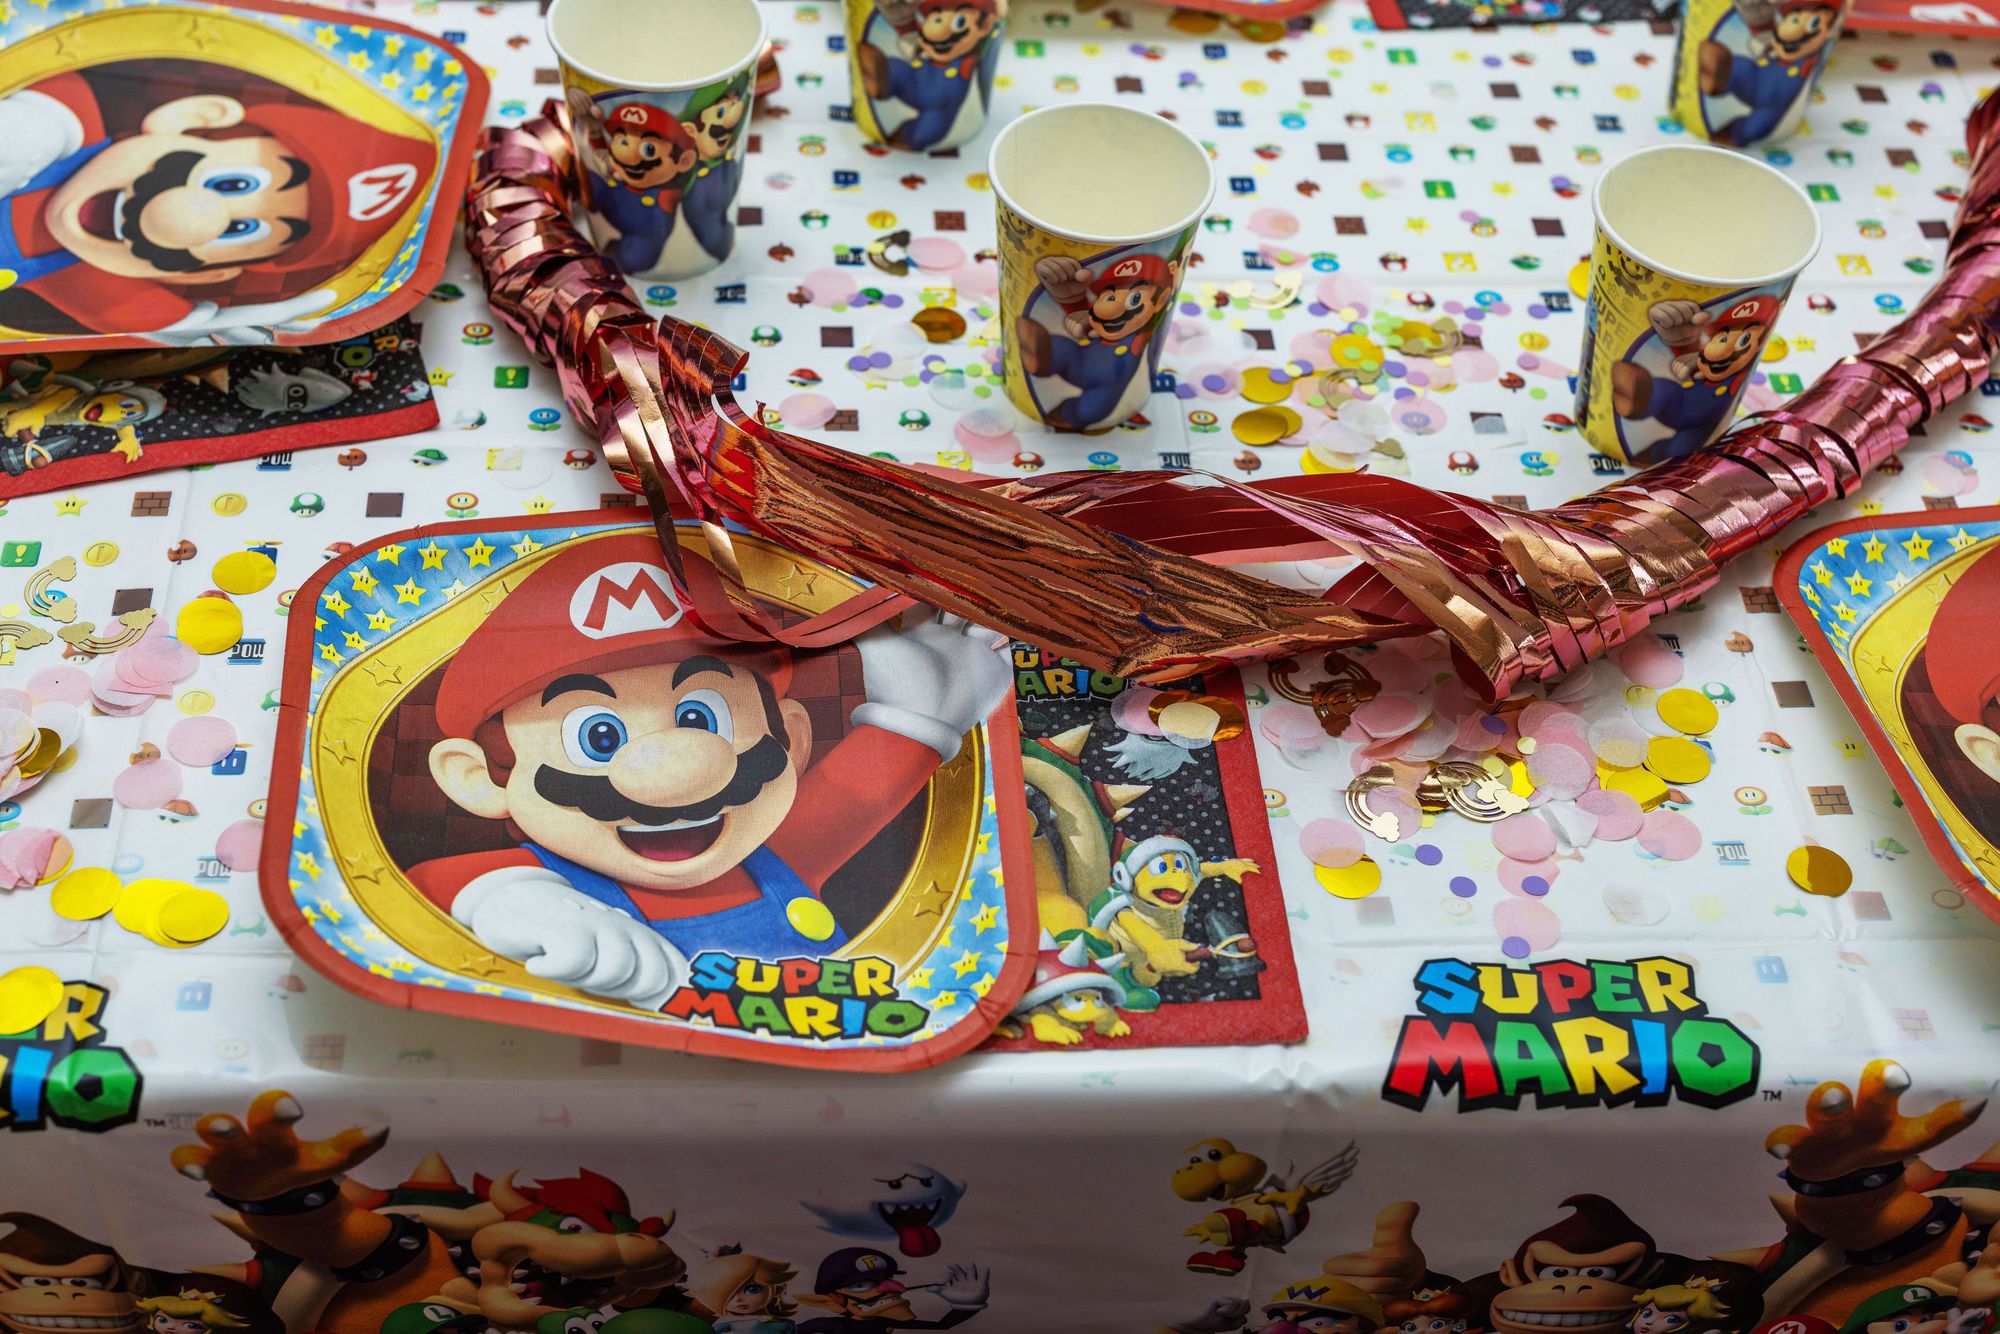 Topper de Mario Bross  Super mario bros birthday party, Super mario bros  party, Mario bros party